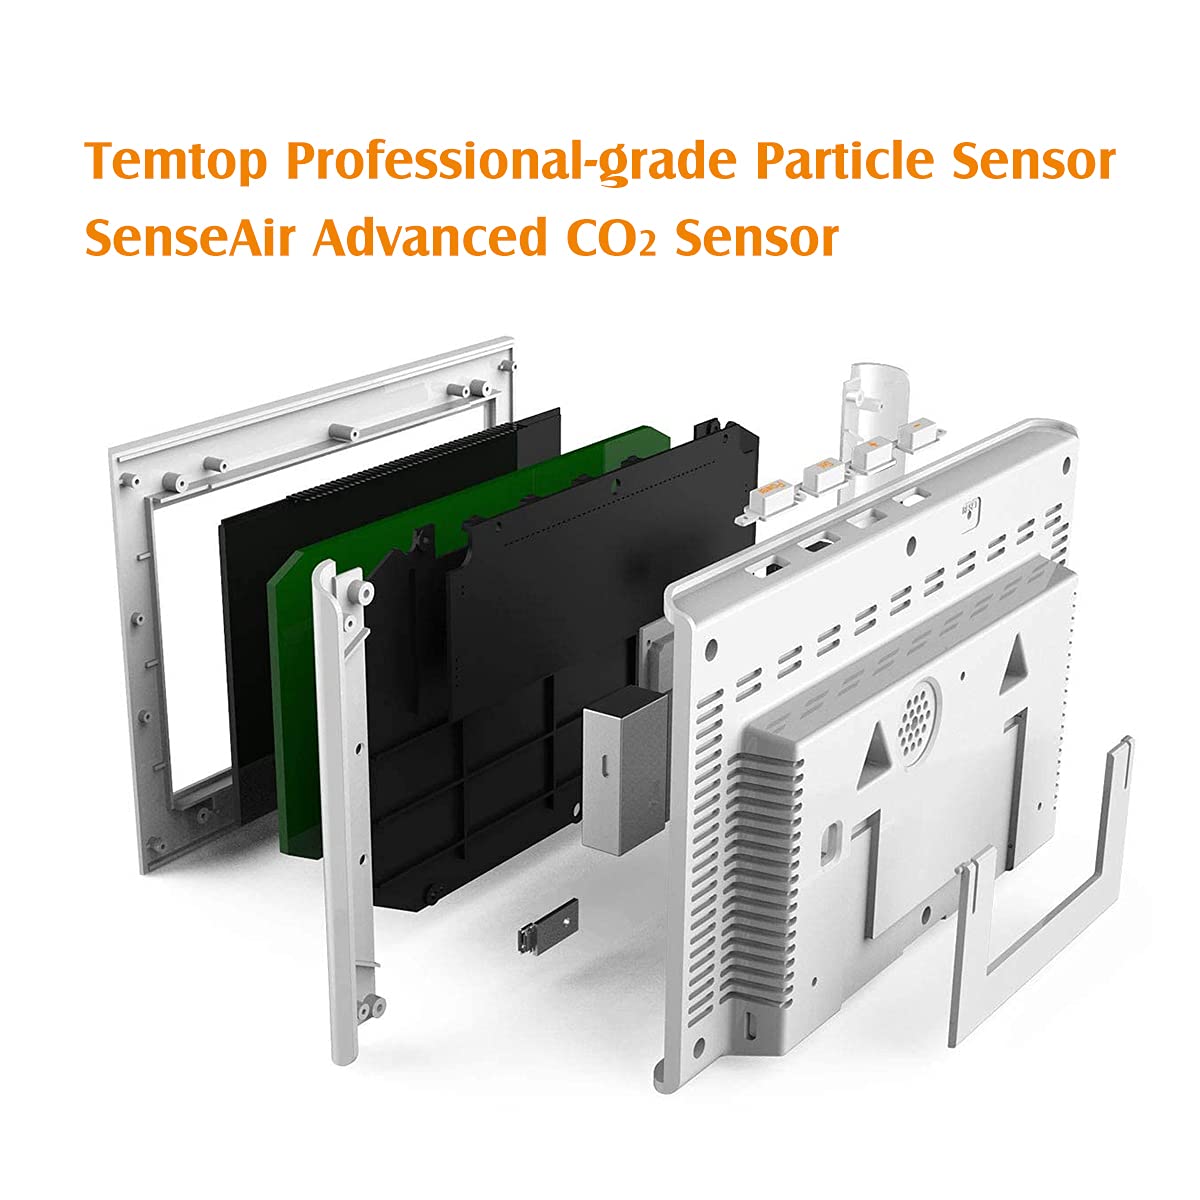 Temtop P20C 室内空気質モニター - PM2.5 PM10 CO2 温度湿度を測定